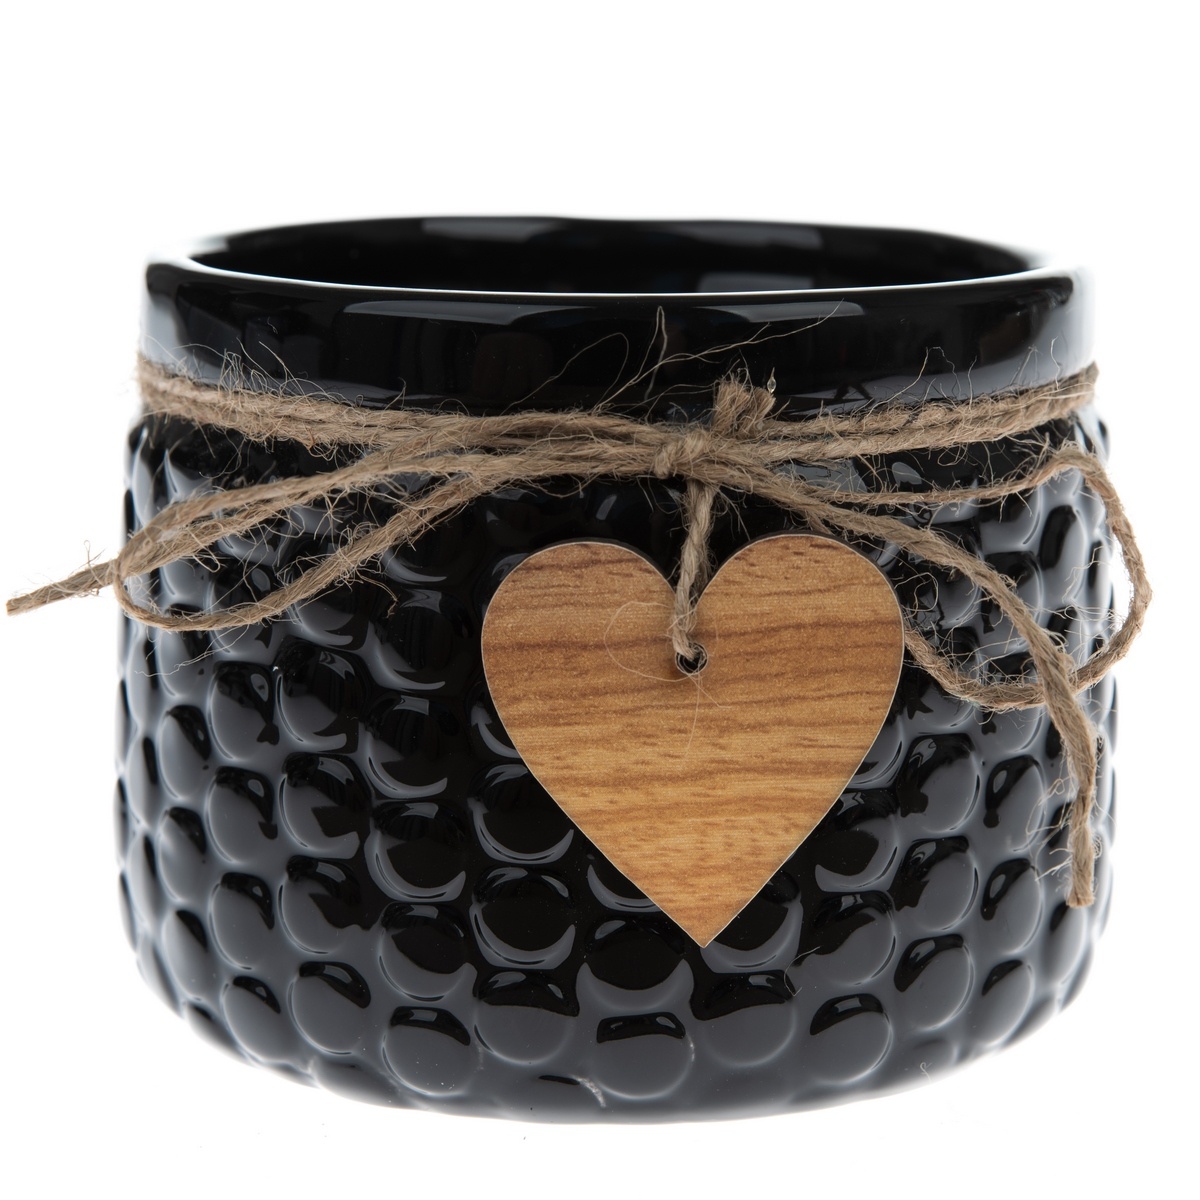 Poza Masca de ghiveci Wood heart din ceamica negru, 8 x 11 cm